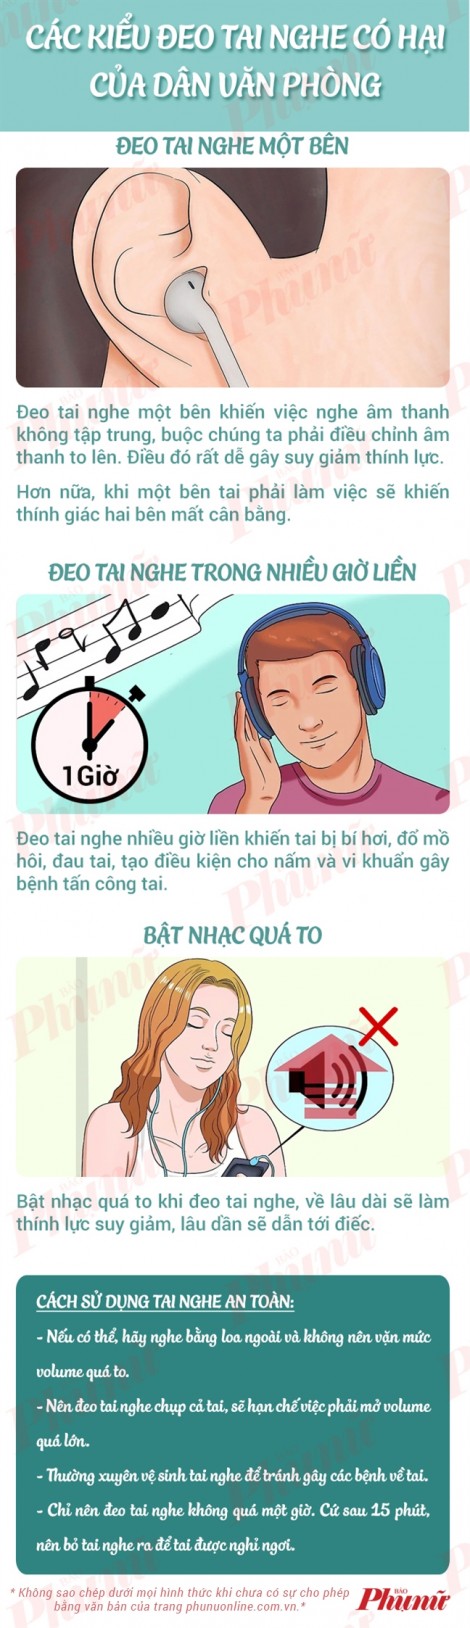 Cách sử dụng tai nghe đúng cách ít người biết